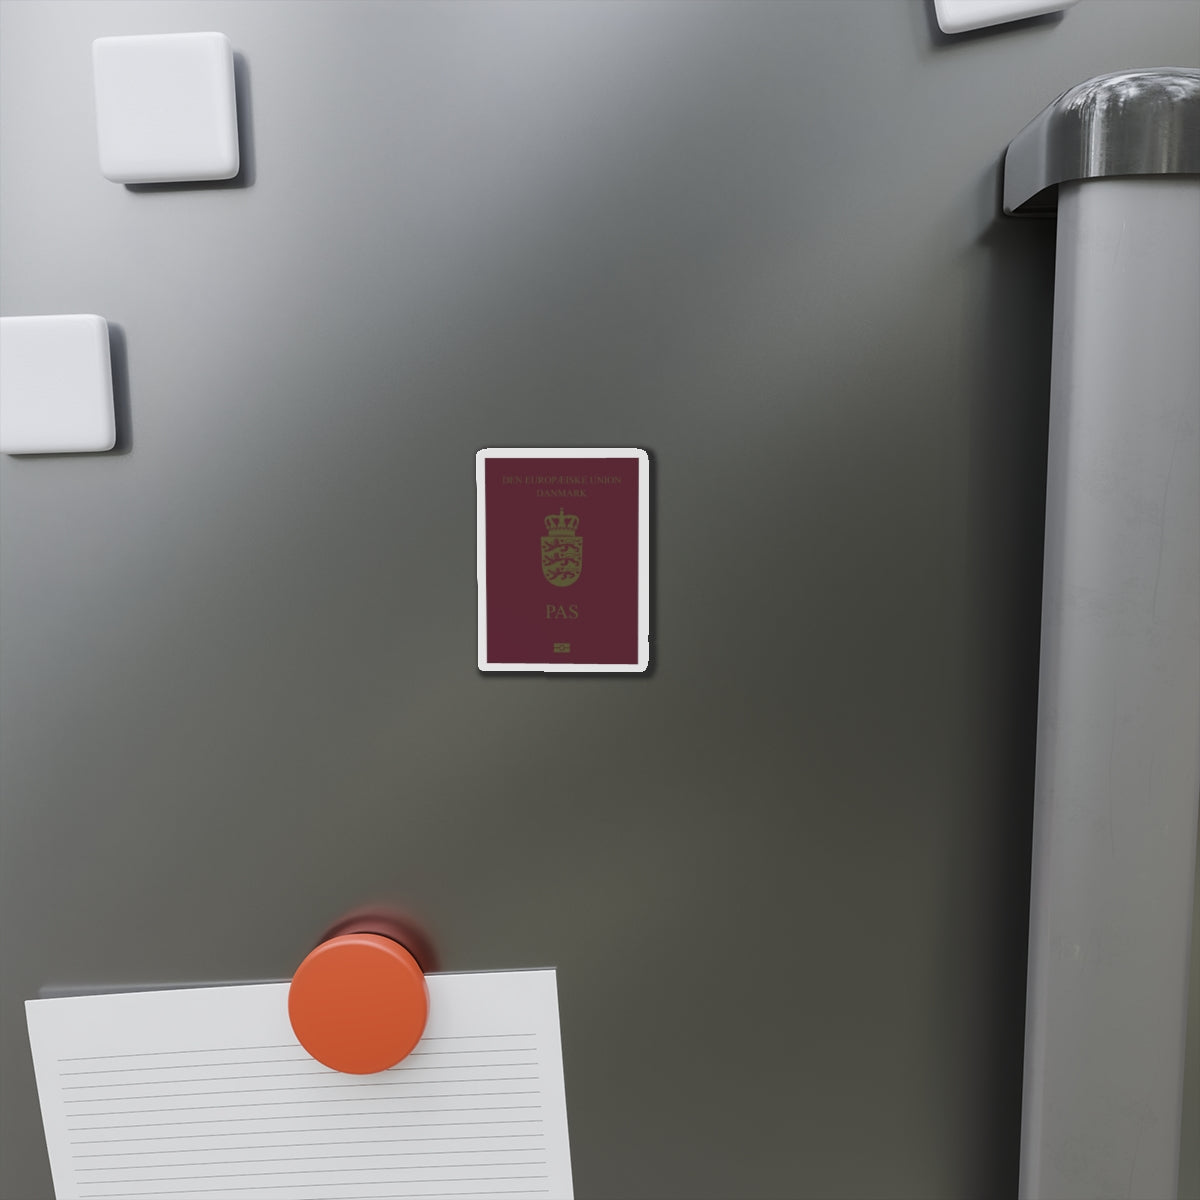 Danish Passport - Die-Cut Magnet-The Sticker Space